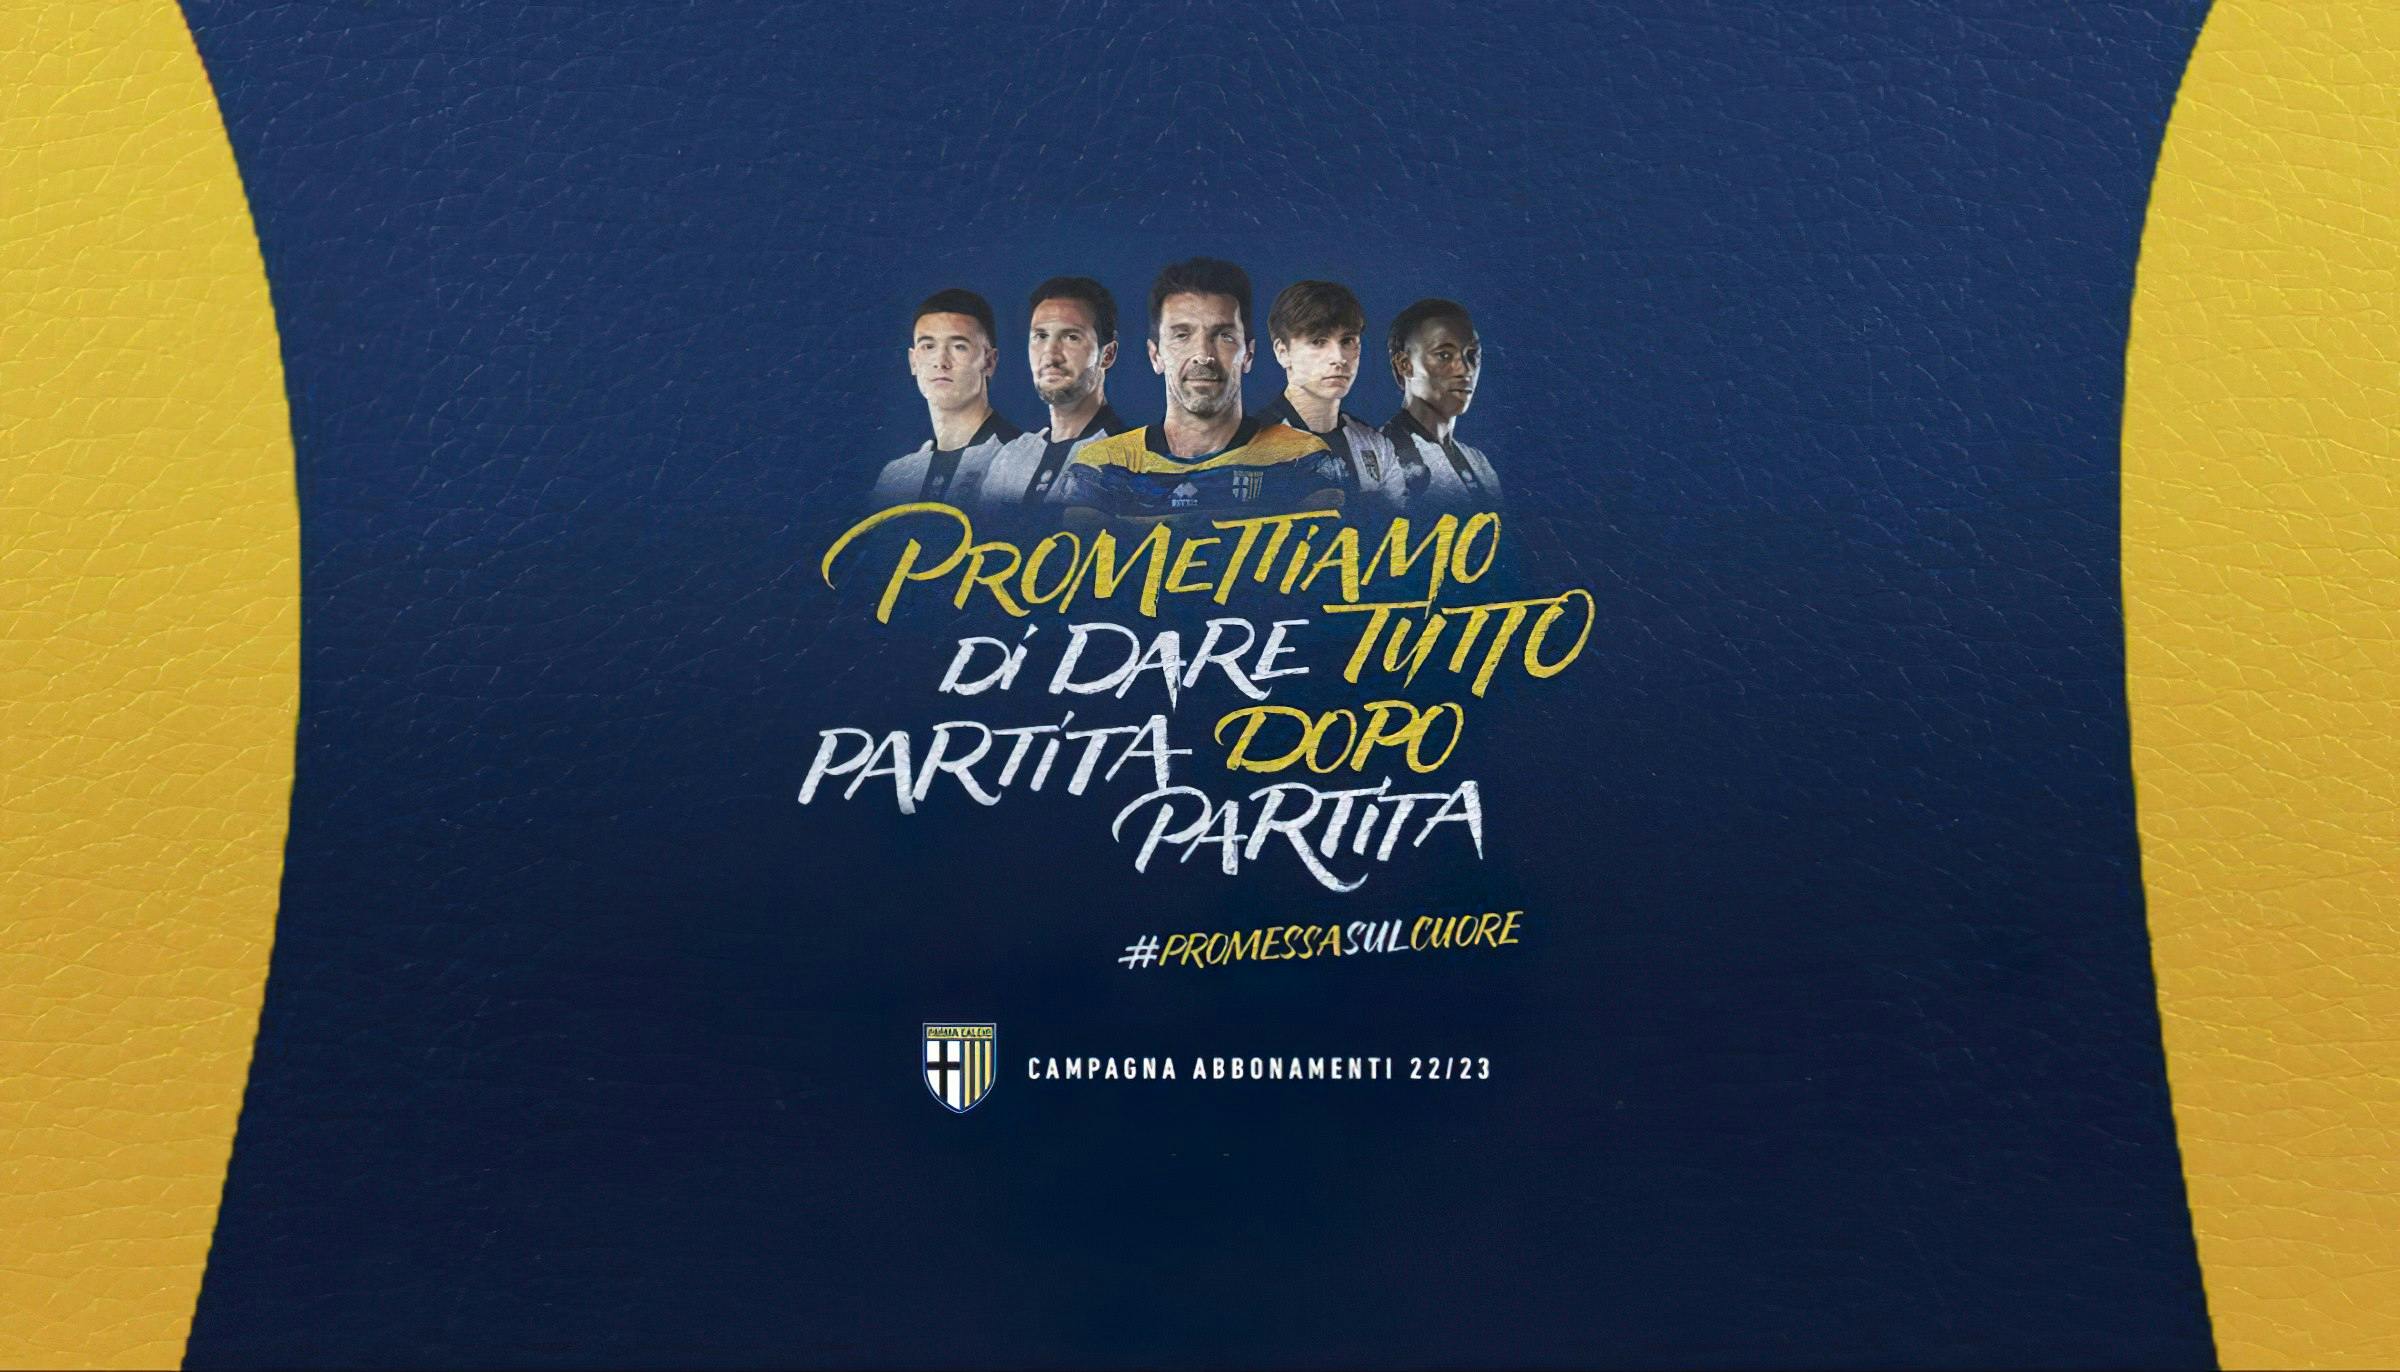 Caffeina Parma Calcio Promessa sul cuore